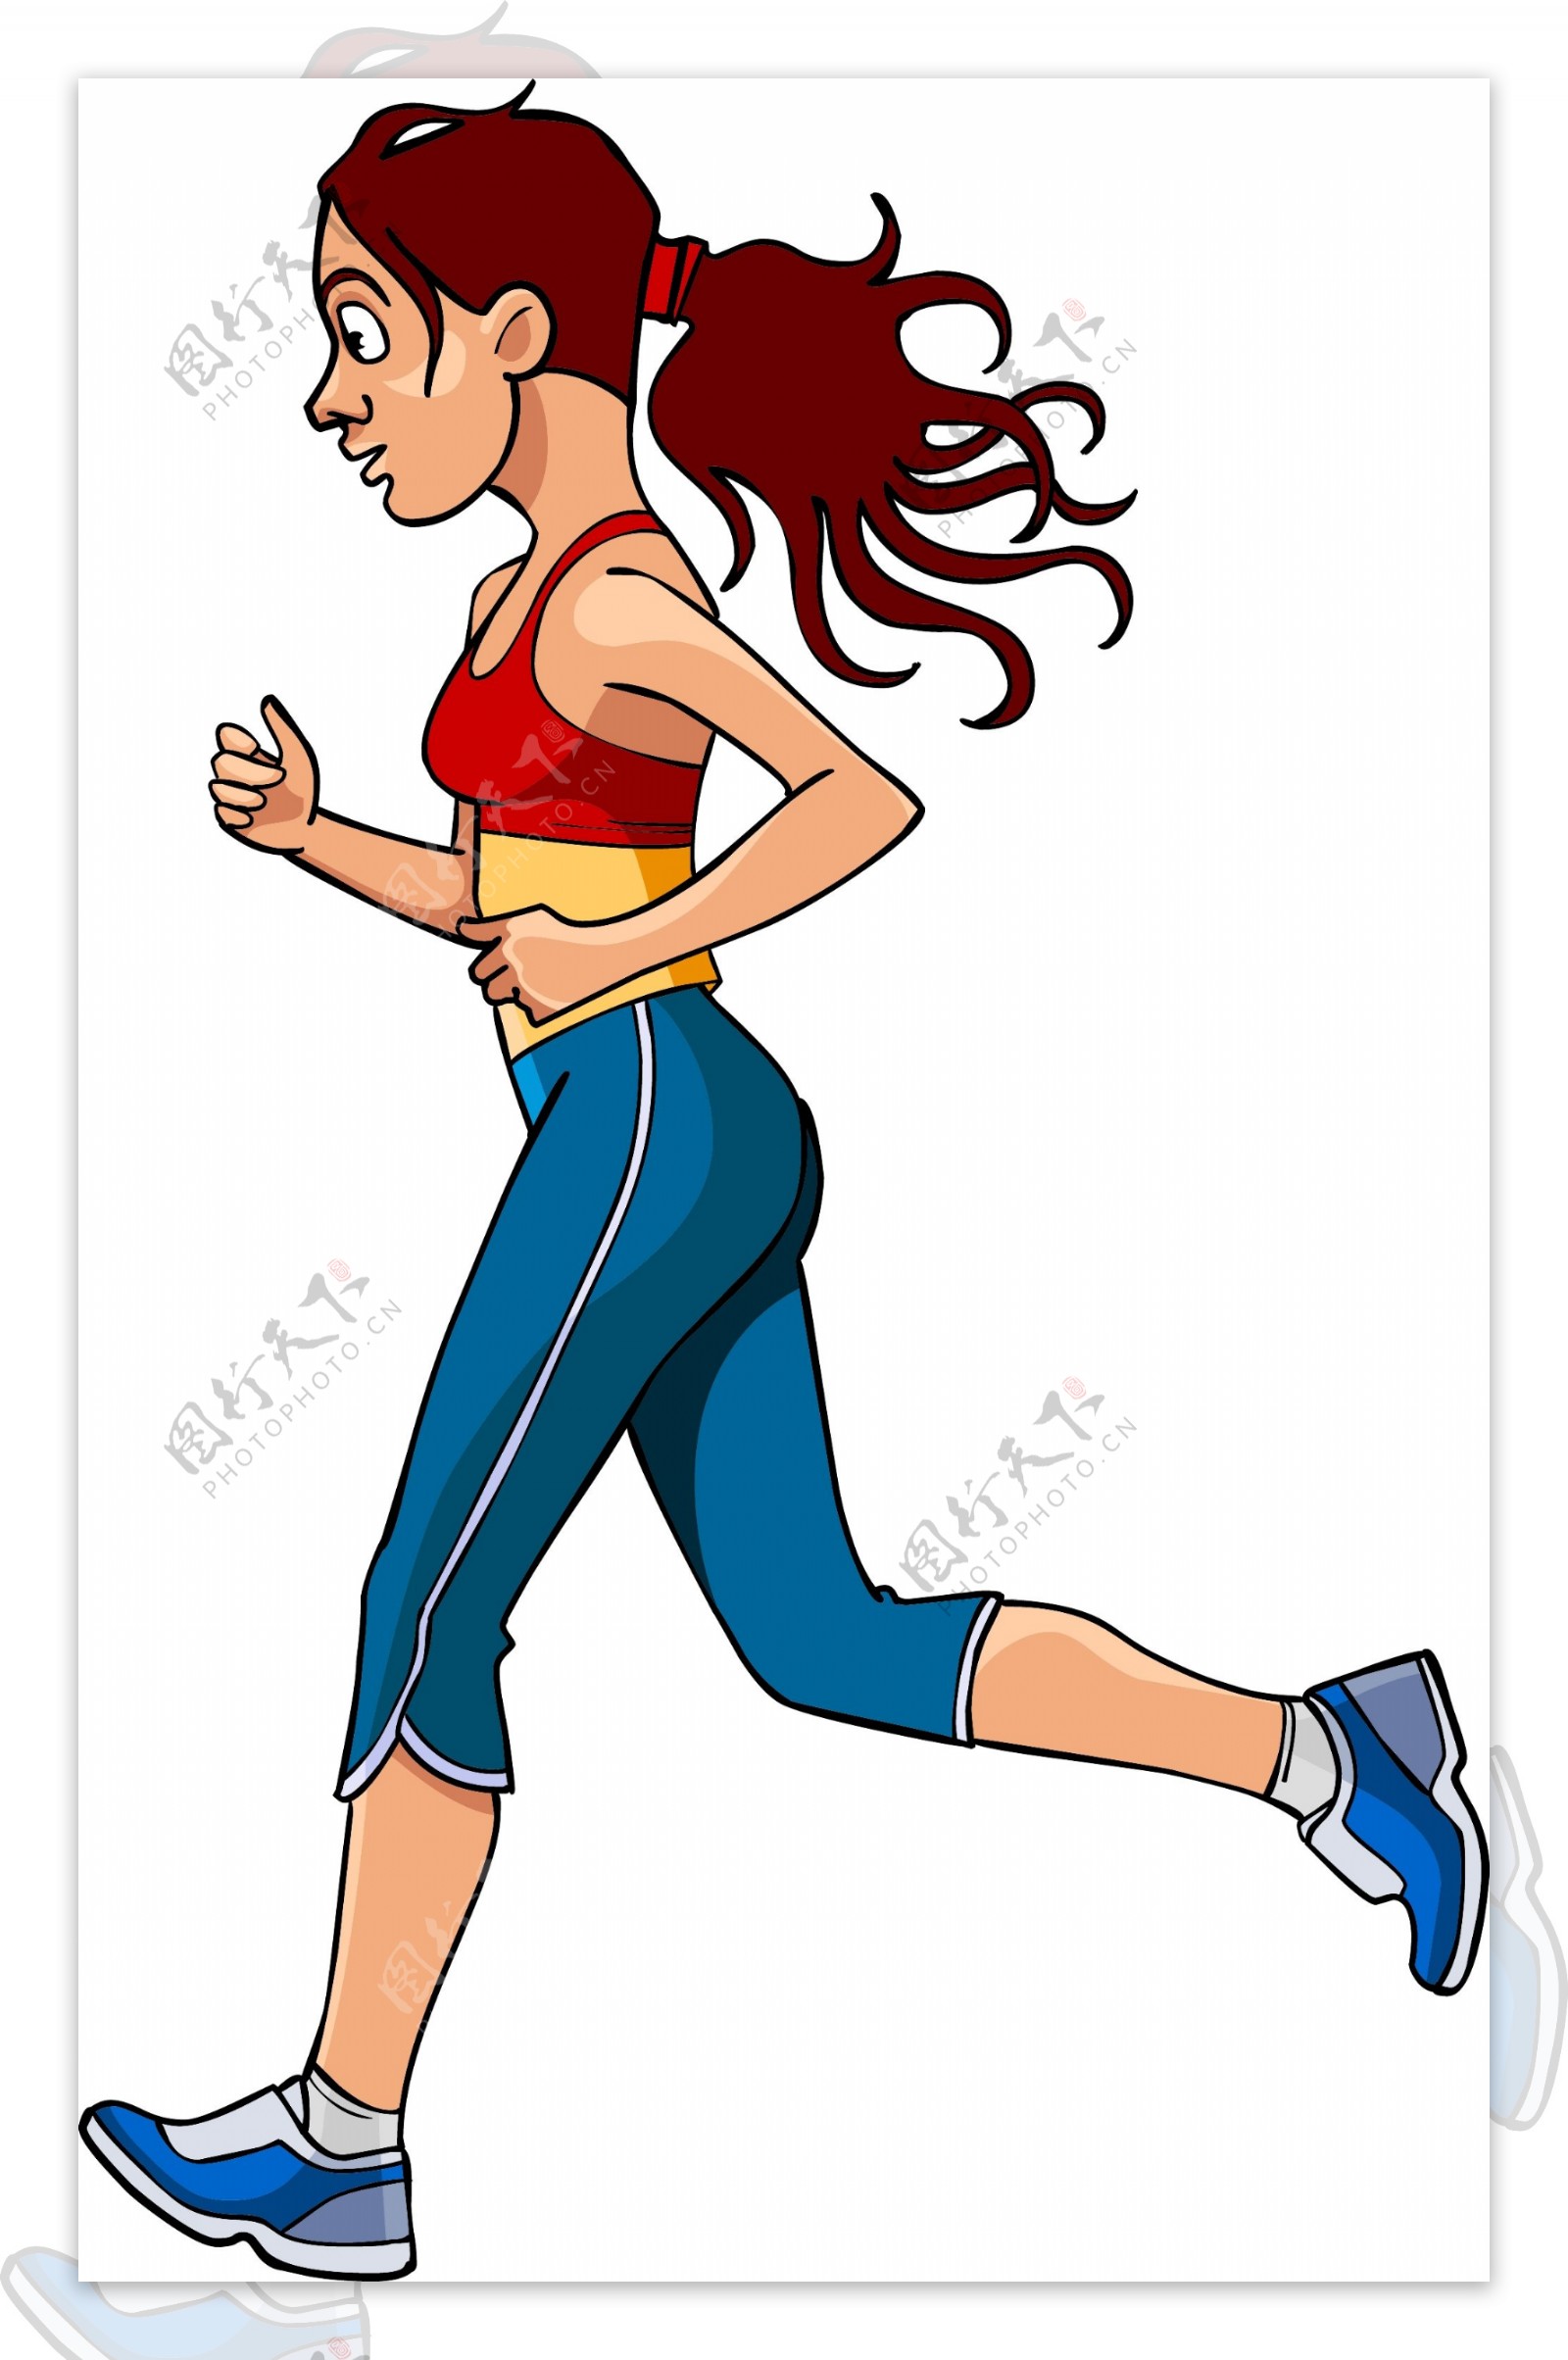 跑步健身的人物插画